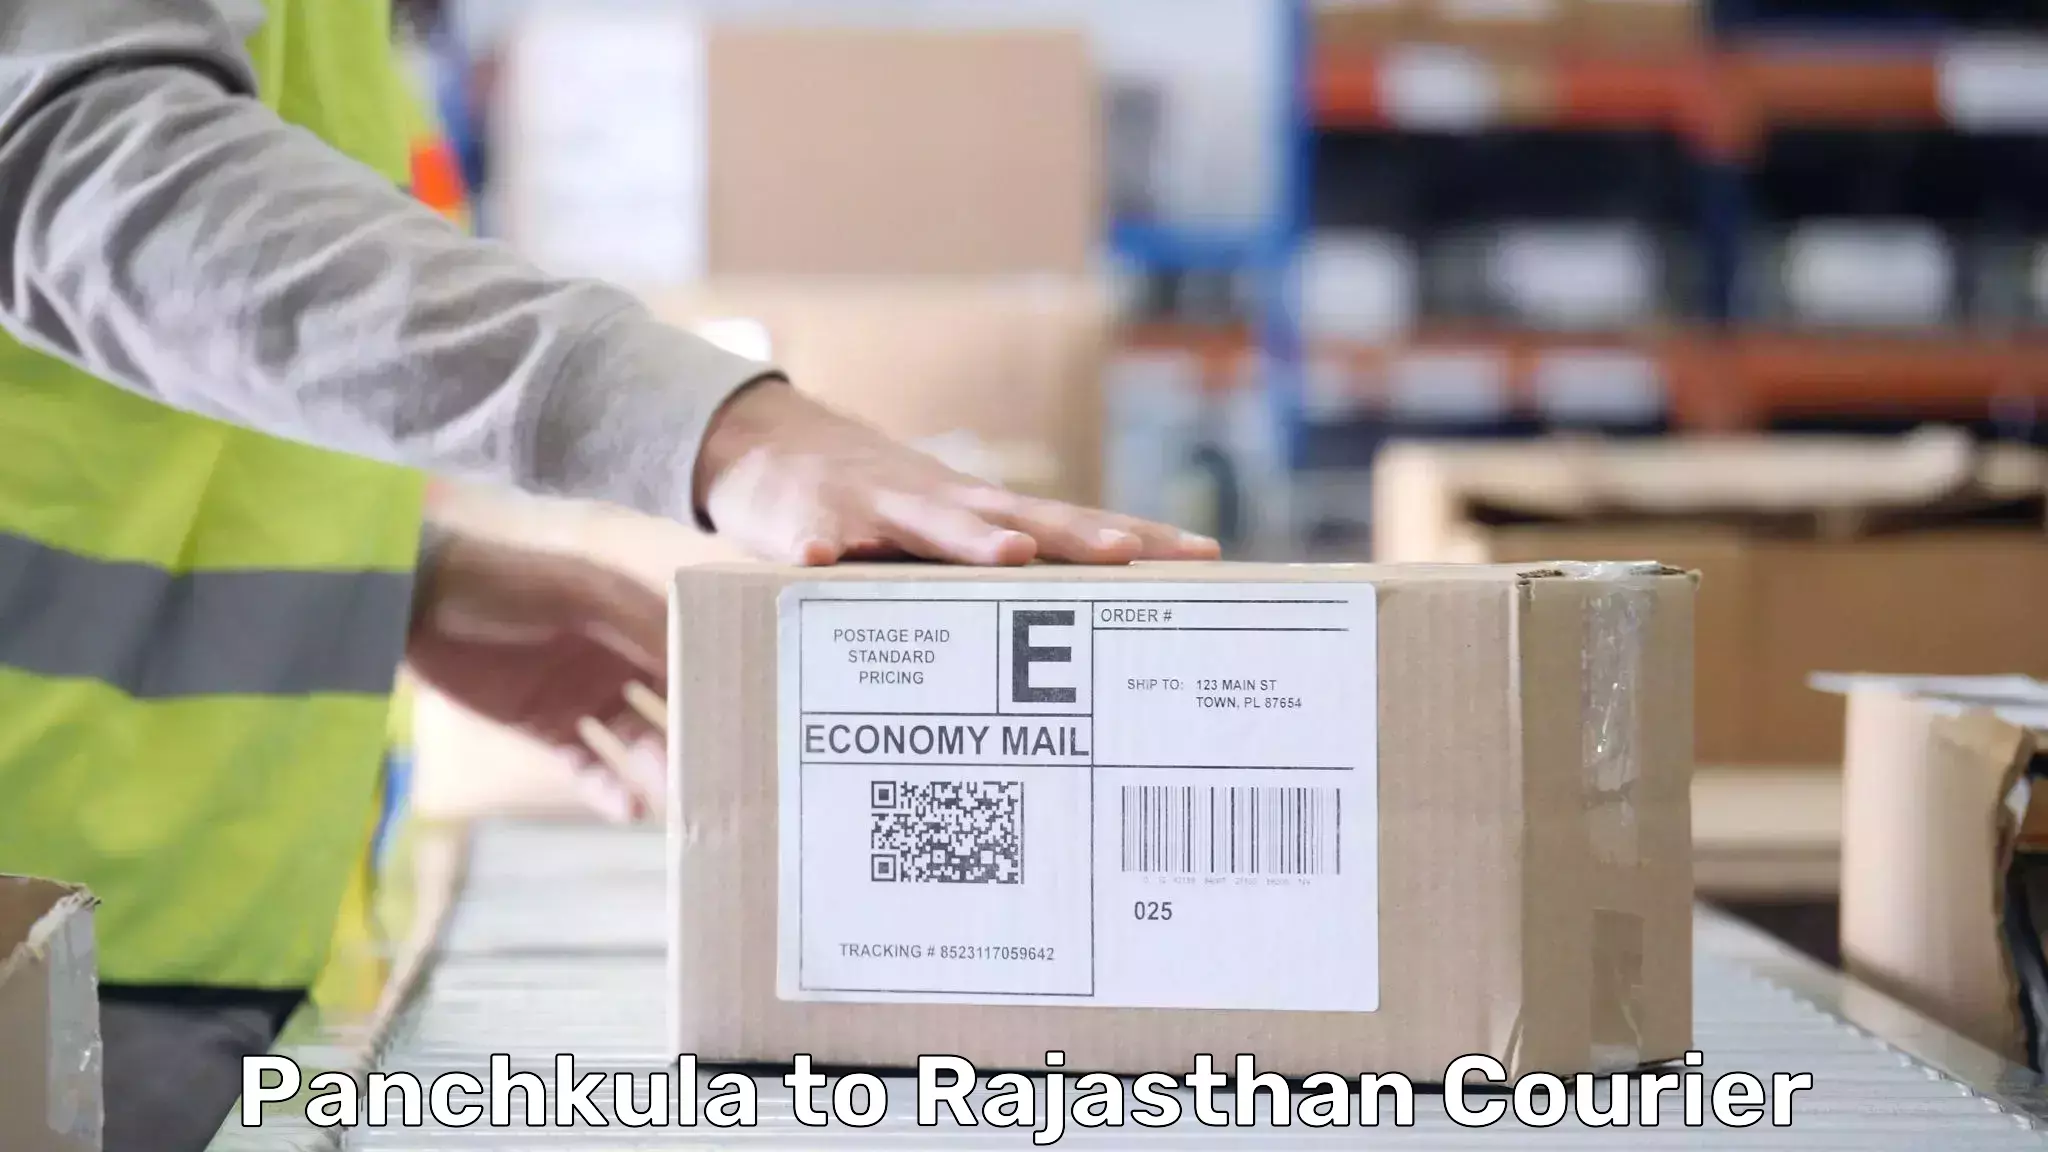 Baggage transport innovation Panchkula to Rajasthan